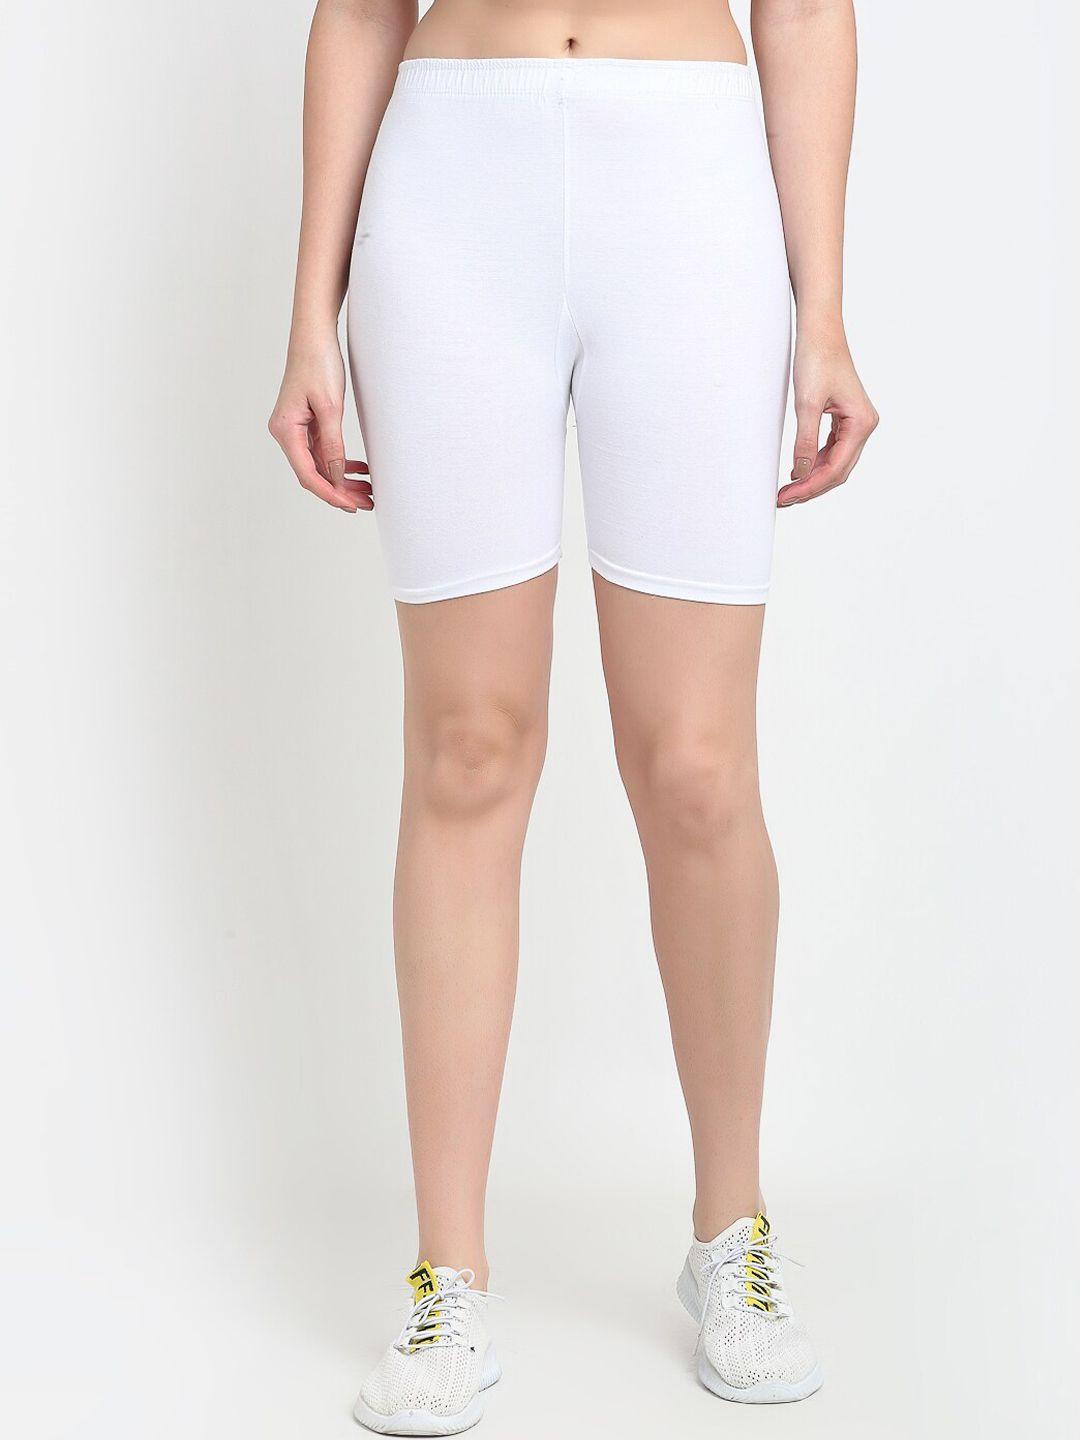 gracit-women-white-biker-shorts